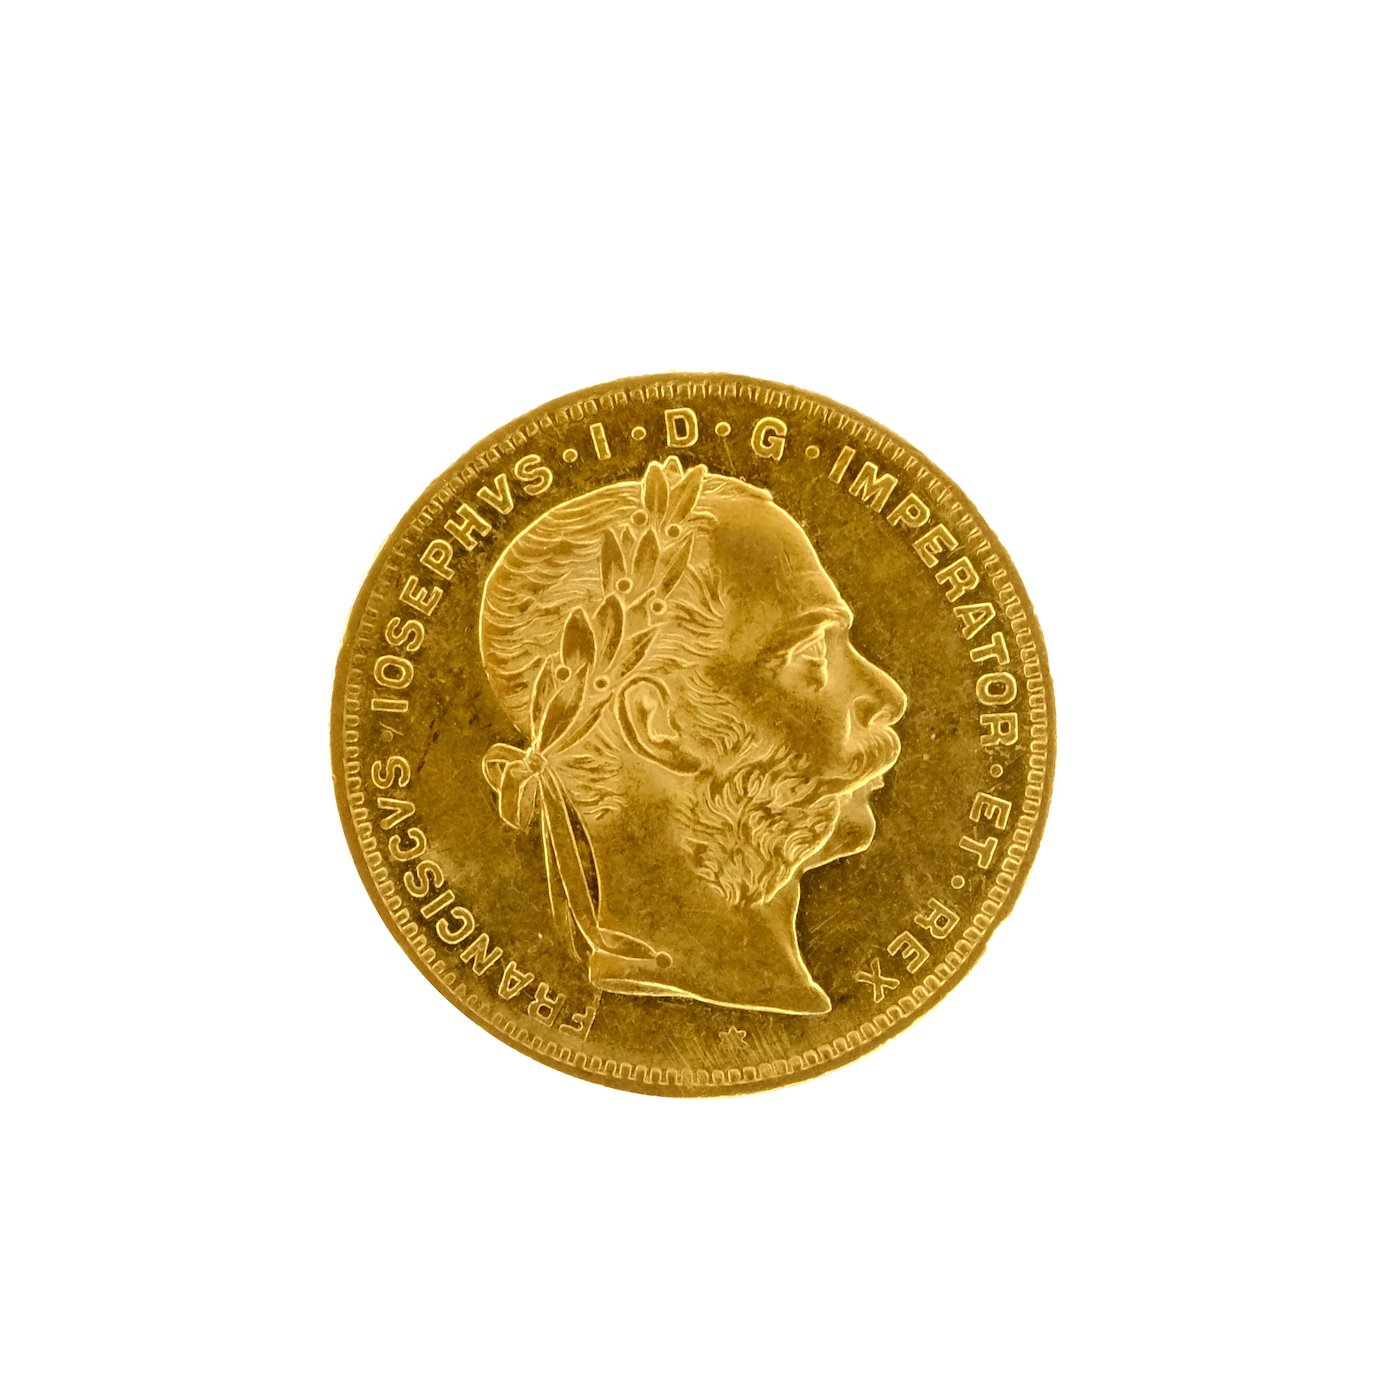 .. - Rakousko Uhersko zlatý 8 zlatník originální ražba 1877 rakouský, zlato 900/1000, hrubá hmotnost mince 6,42 g